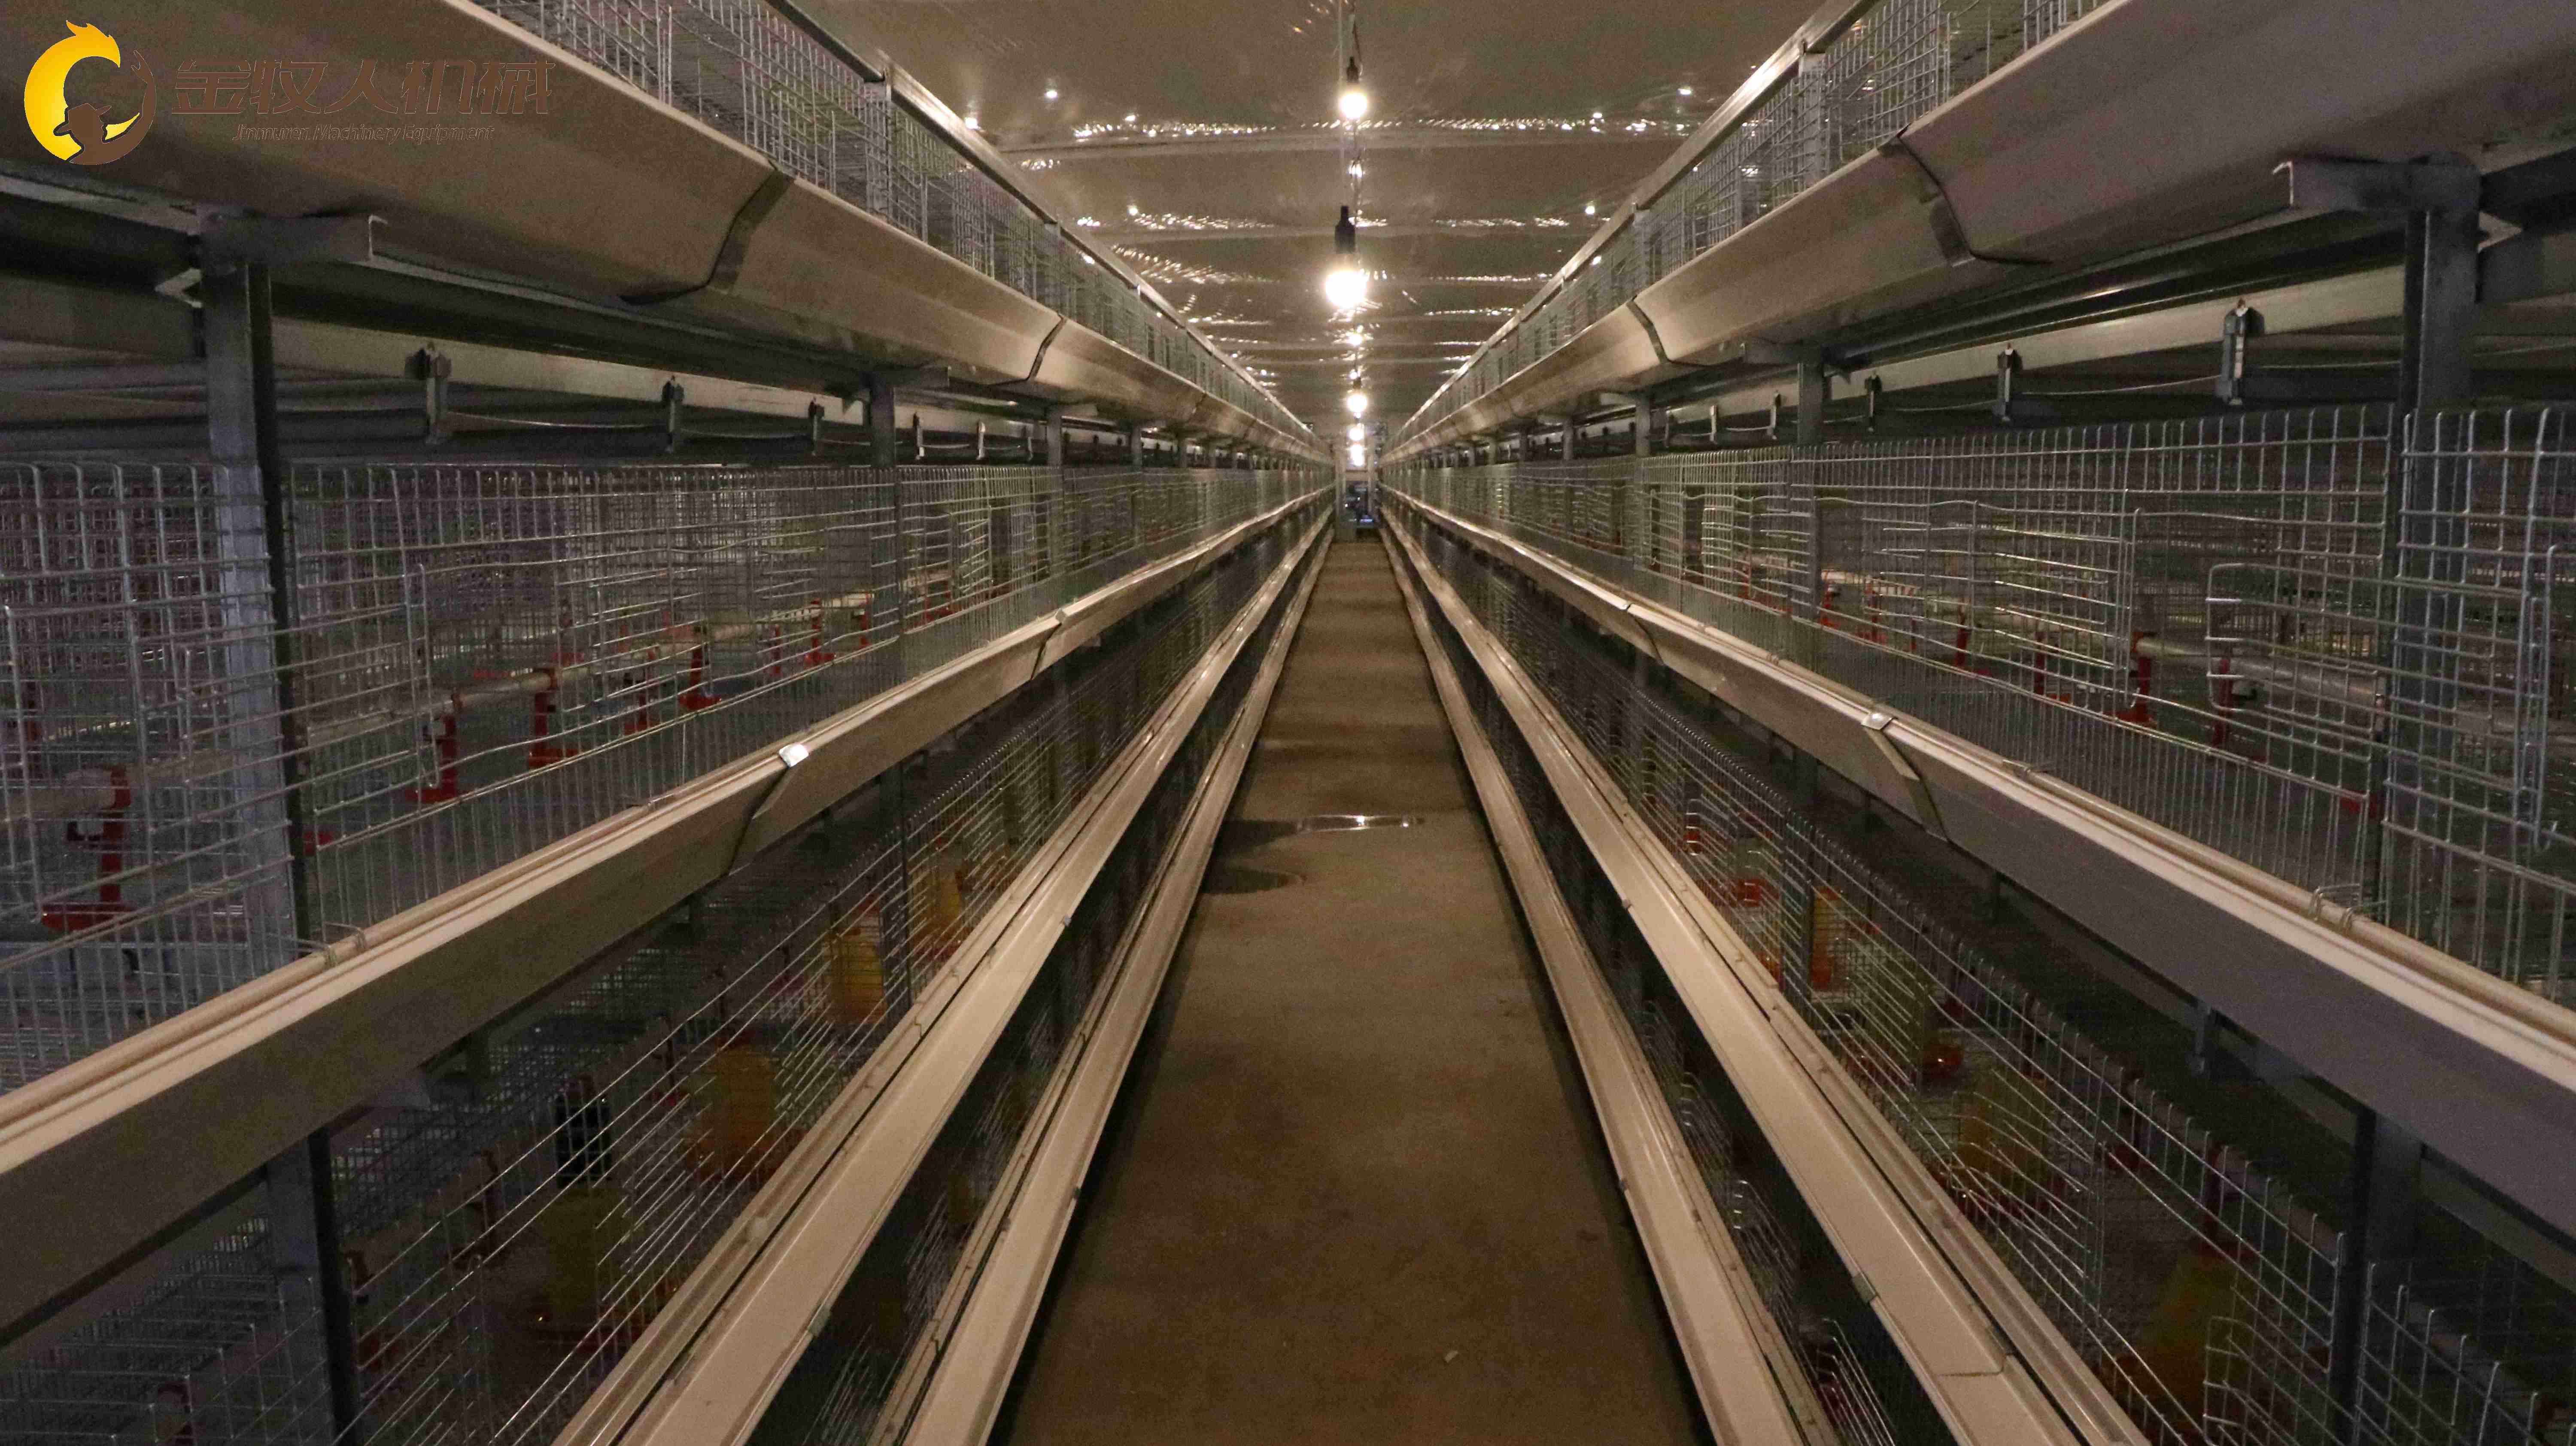 大型层叠鸡笼丨蛋鸡笼丨育雏笼丨直销各种养鸡笼网设备